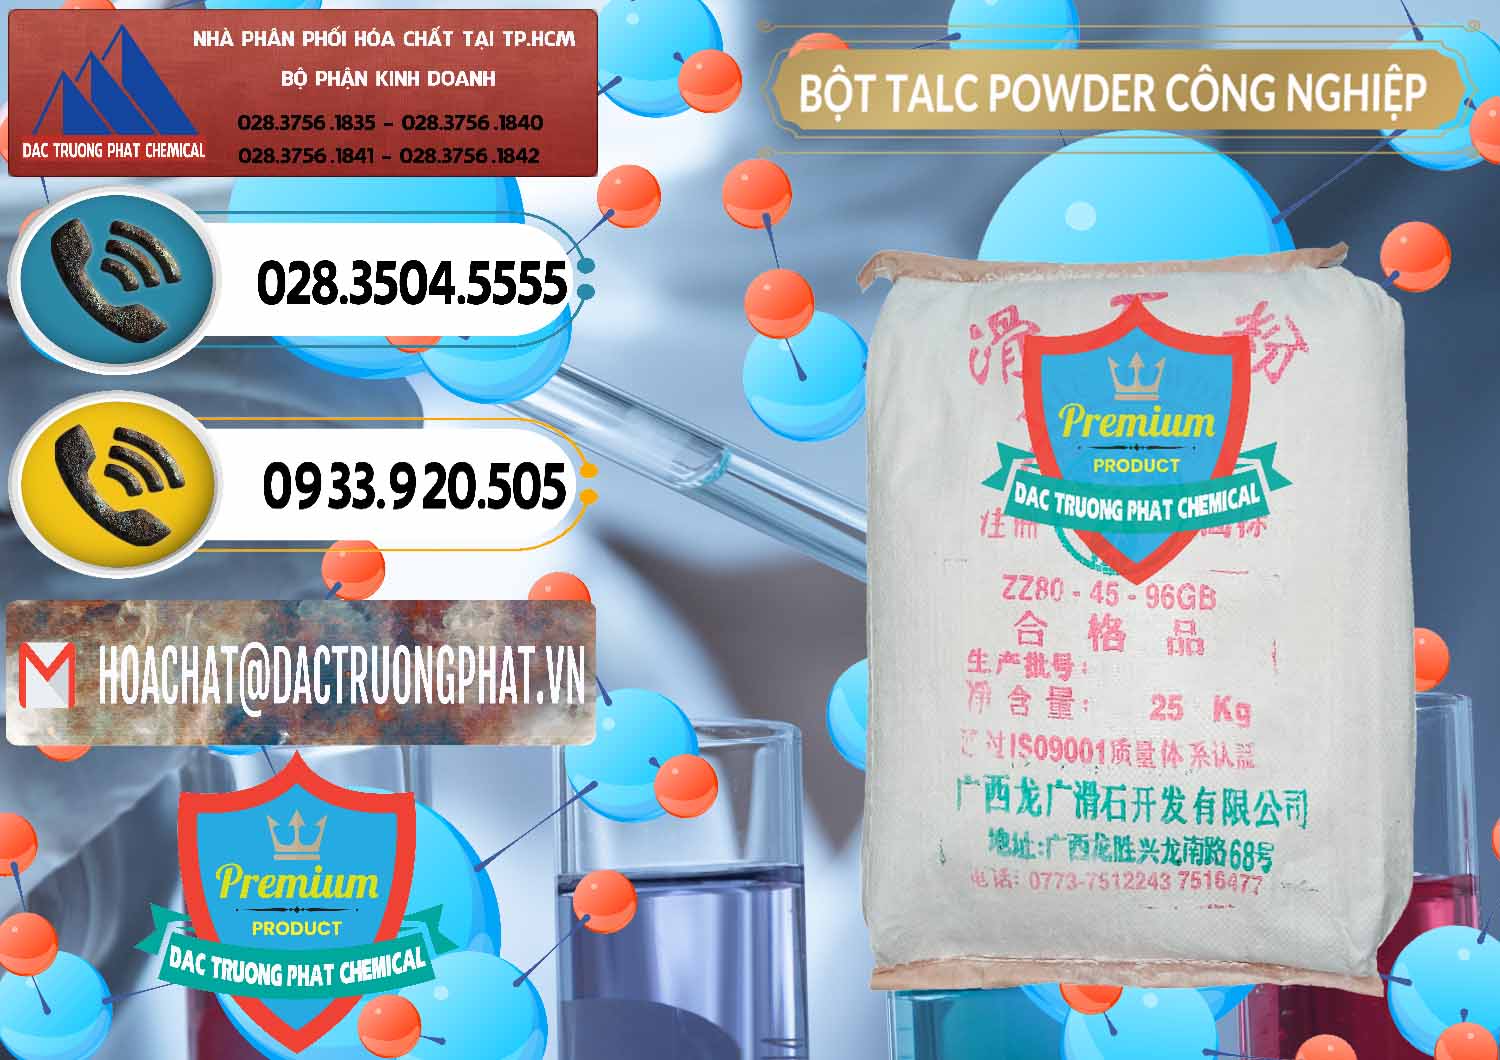 Cty chuyên nhập khẩu và bán Bột Talc Powder Công Nghiệp Trung Quốc China - 0037 - Chuyên cung cấp - kinh doanh hóa chất tại TP.HCM - hoachatdetnhuom.vn